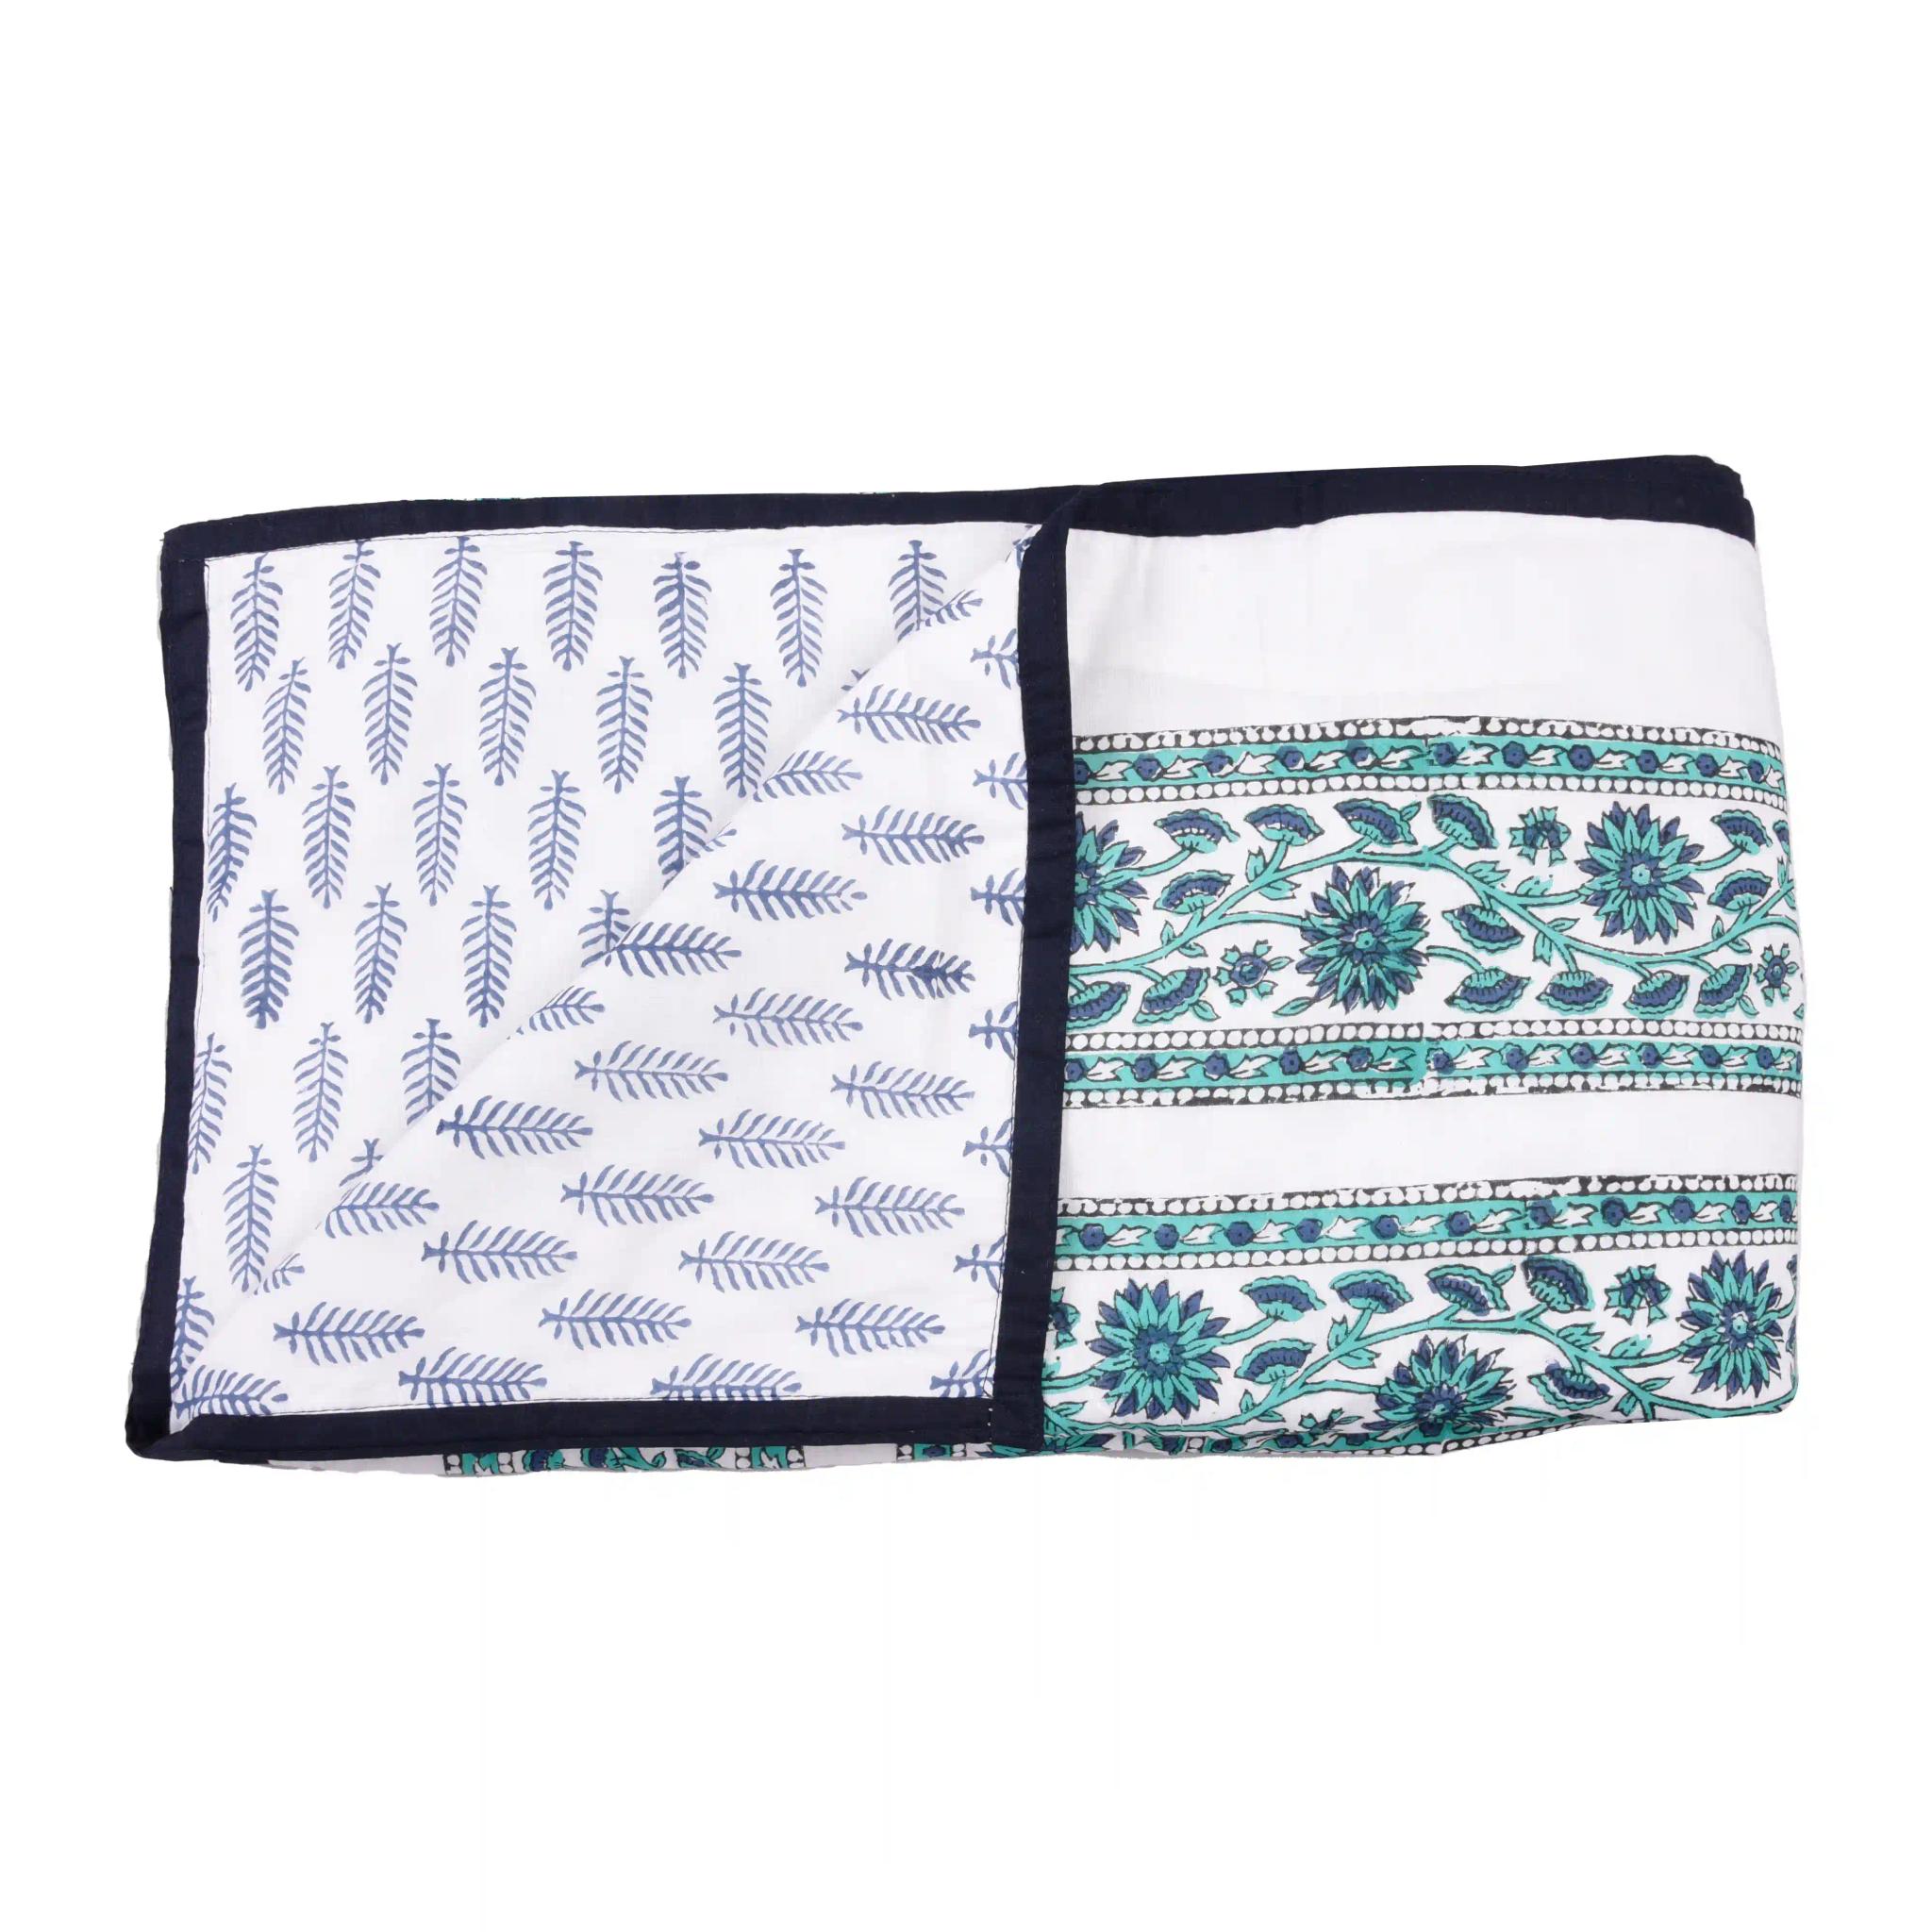 Jaipur Dohar Hand Block Printed Single Bed Cotton Dohar - Blue Green Floral